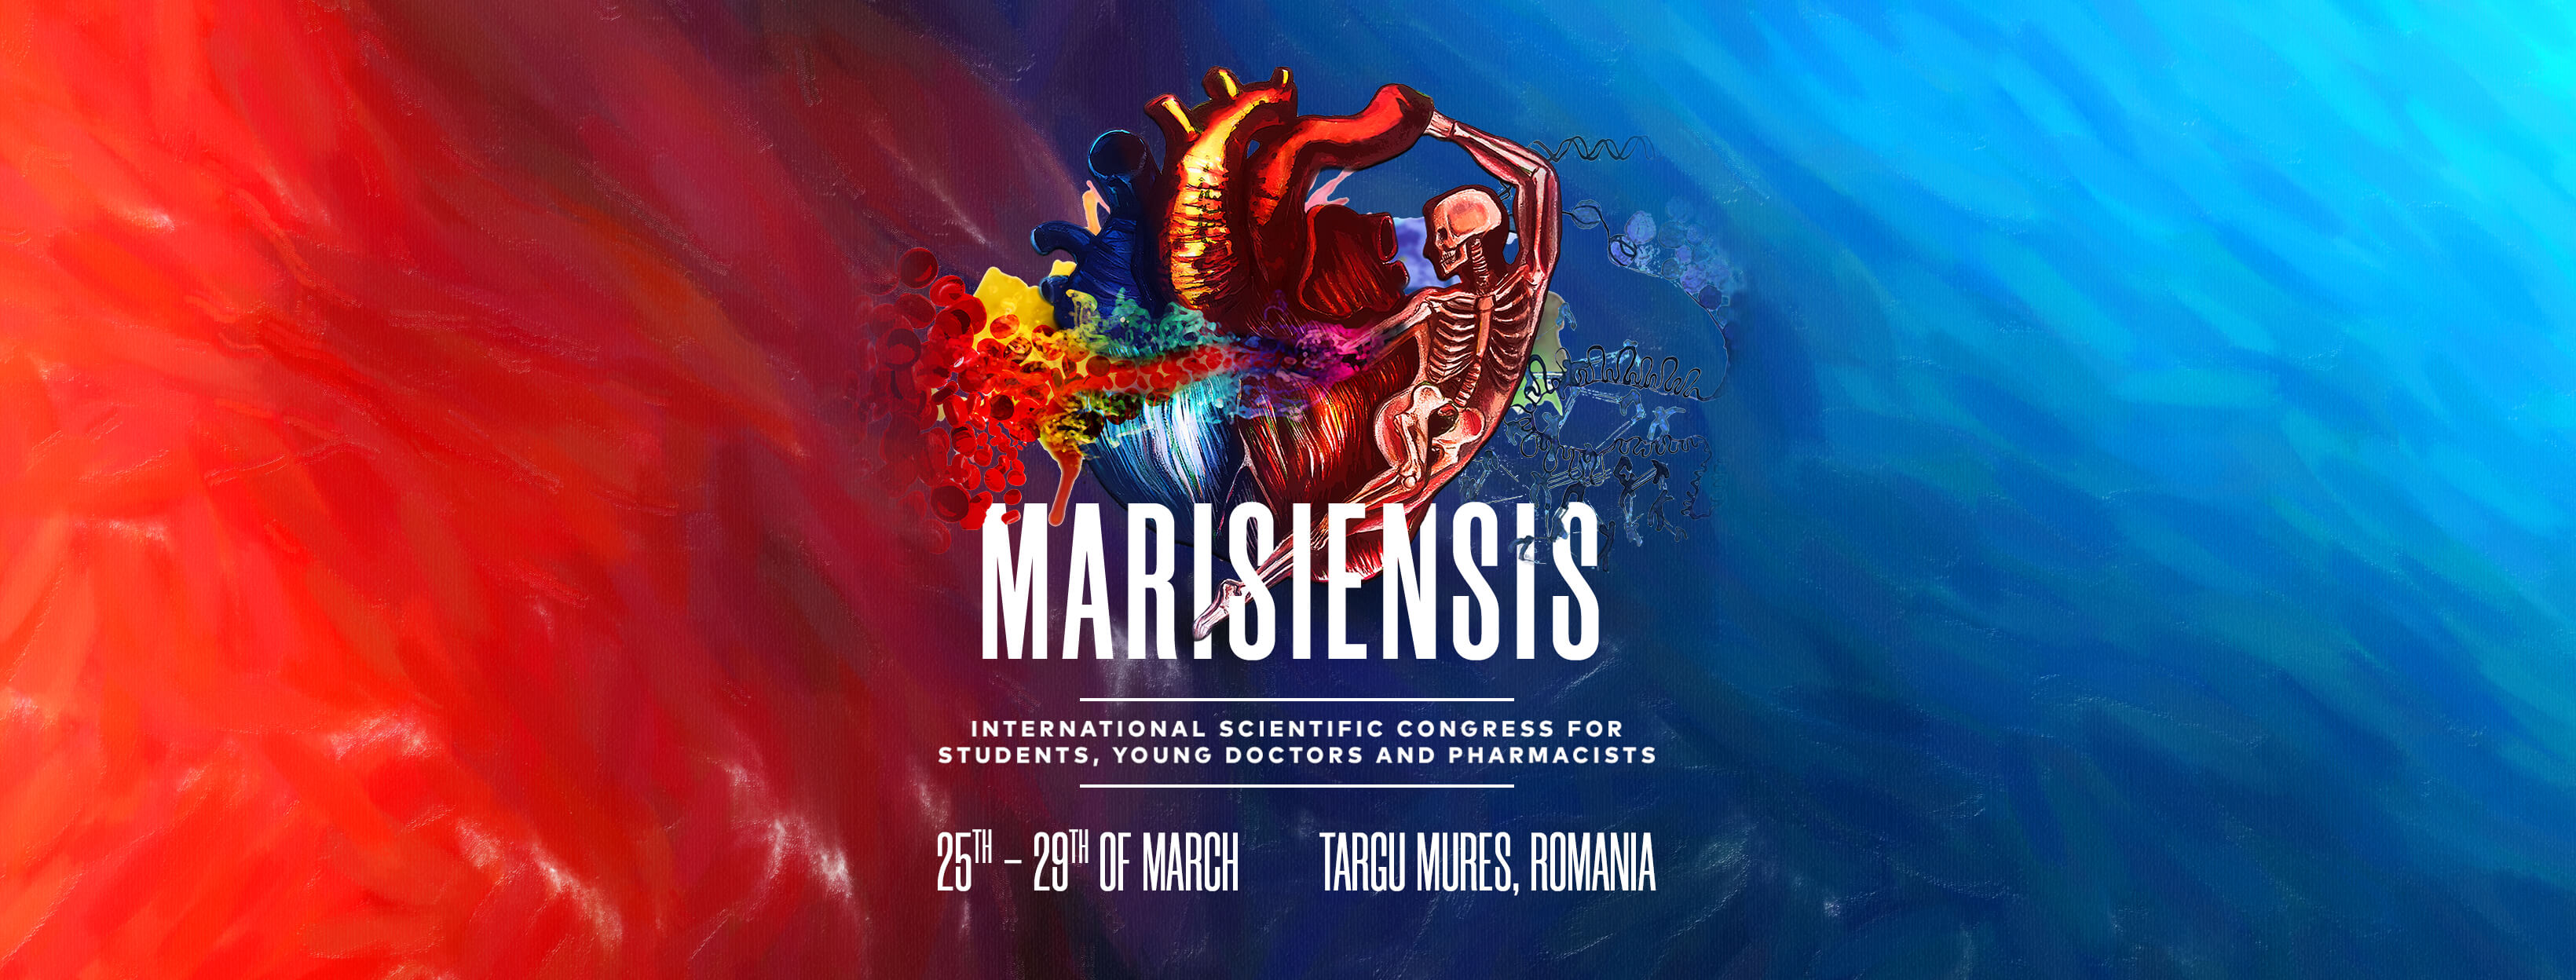 O nouă ediție a Congresului International pentru Studenţi, Tineri Doctori şi Farmacişti  „Marisiensis”